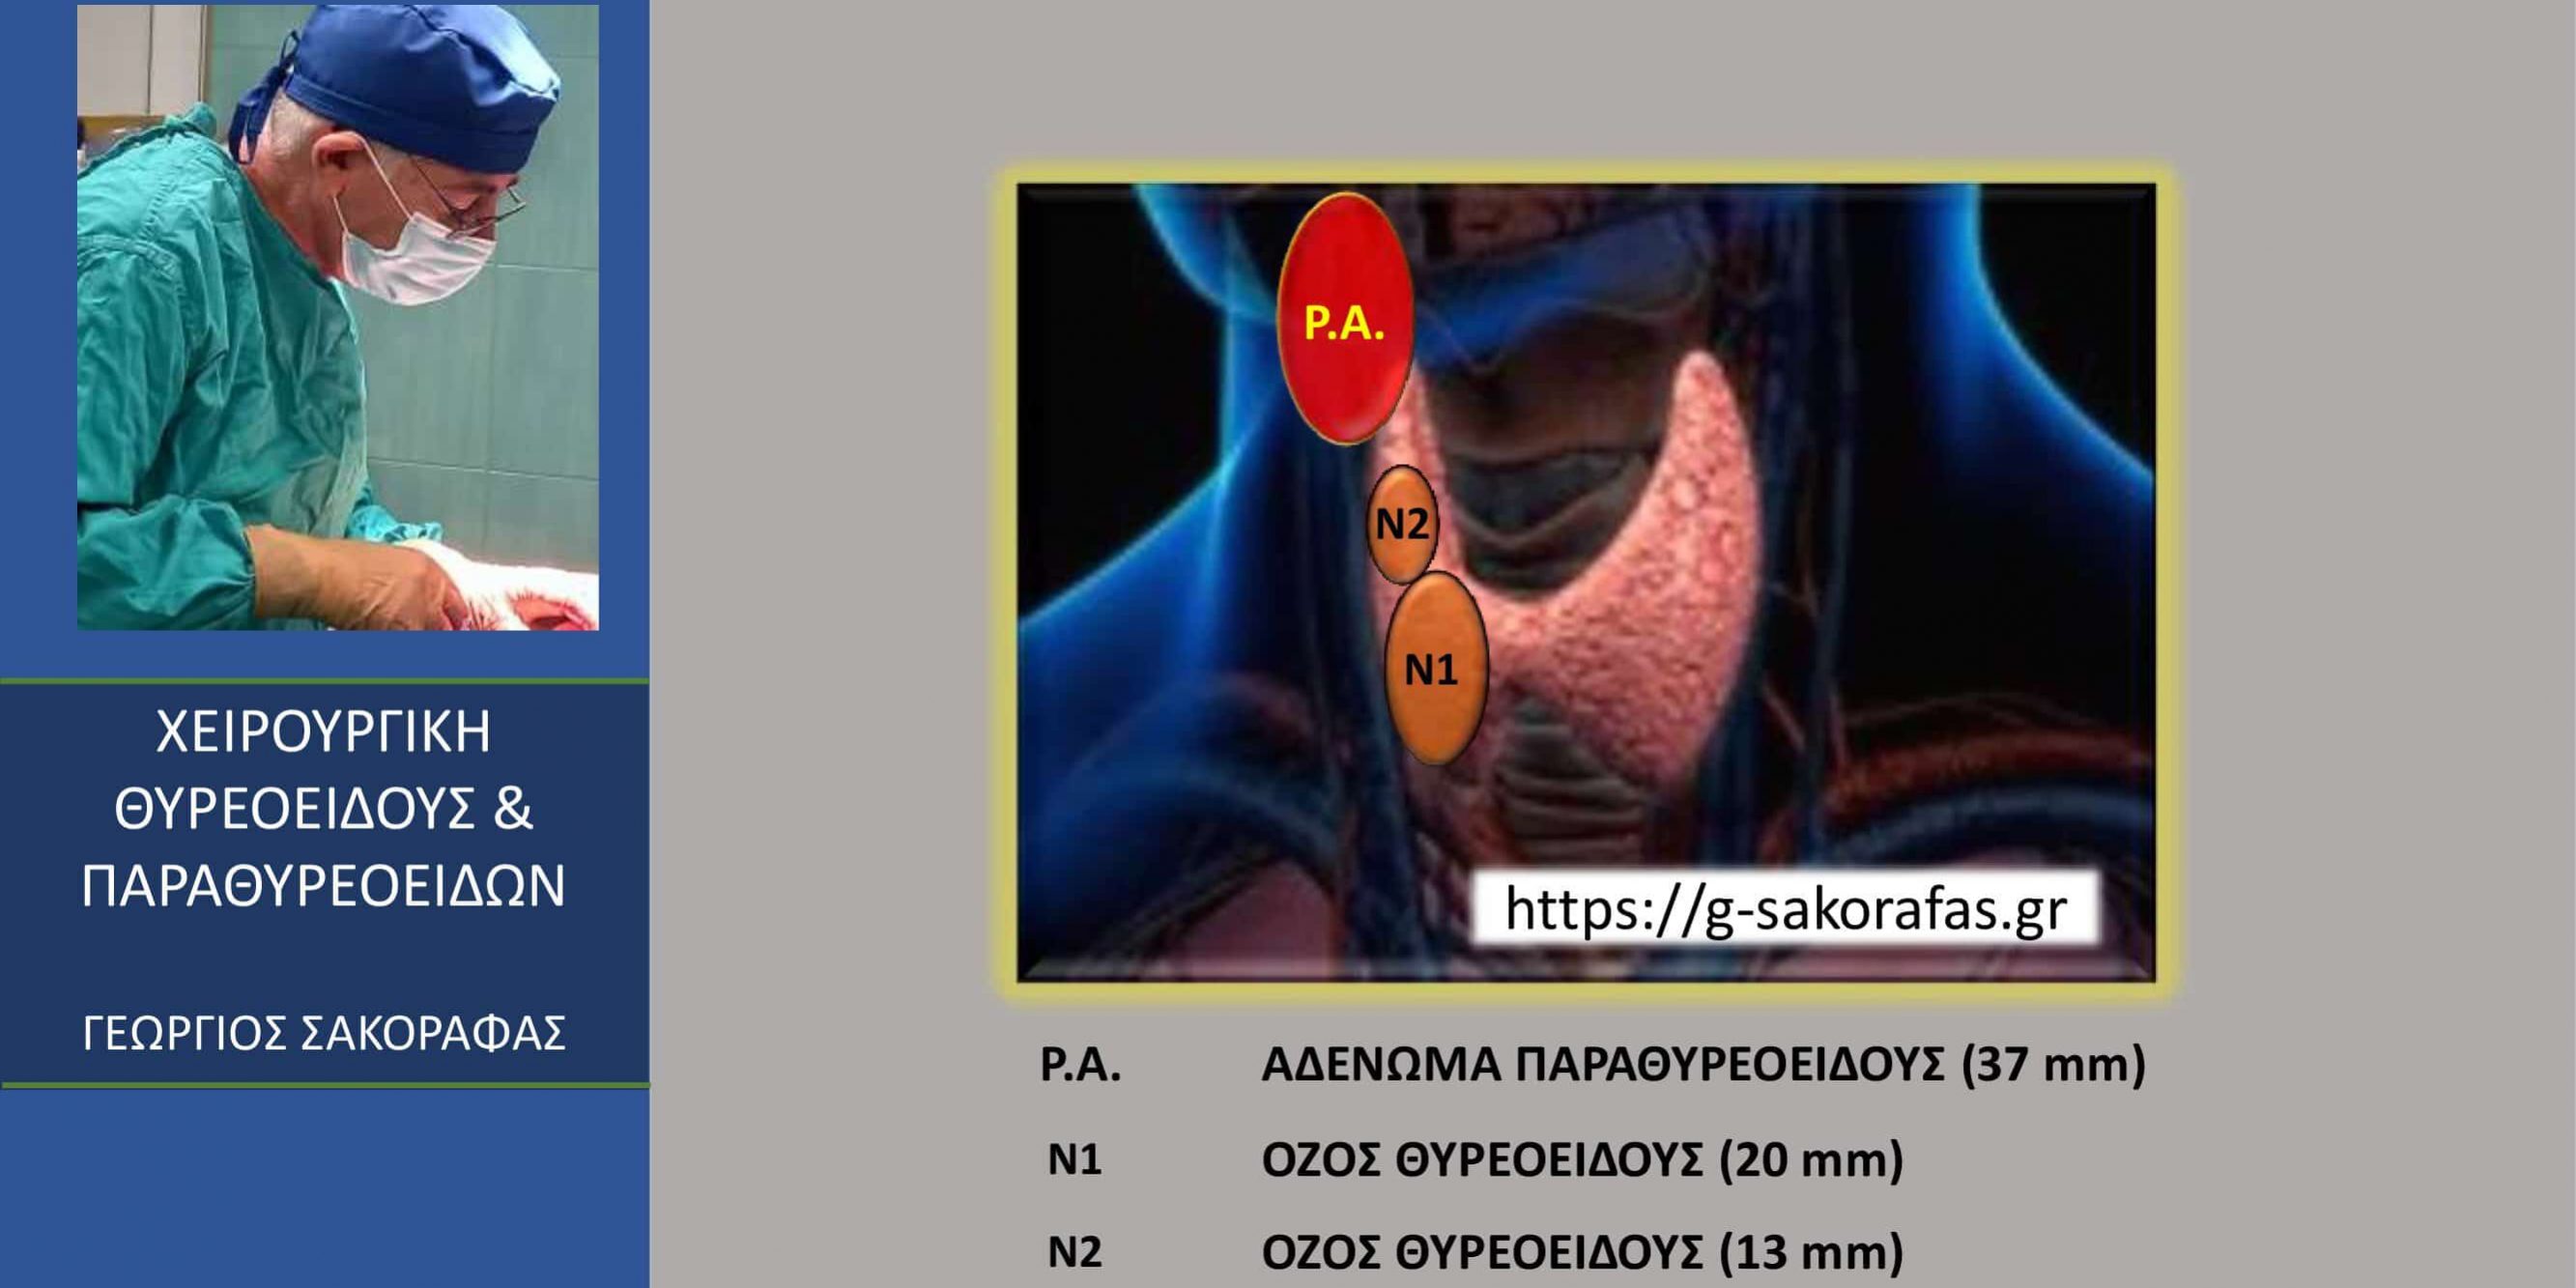 Οπισθοφαρυγγικό ευμέγεθες (37 mm) αδένωμα παραθυρεοειδούς-παραθυρεοειδεκτομή με ταυτόχρονη ολική θυρεοειδεκτομή